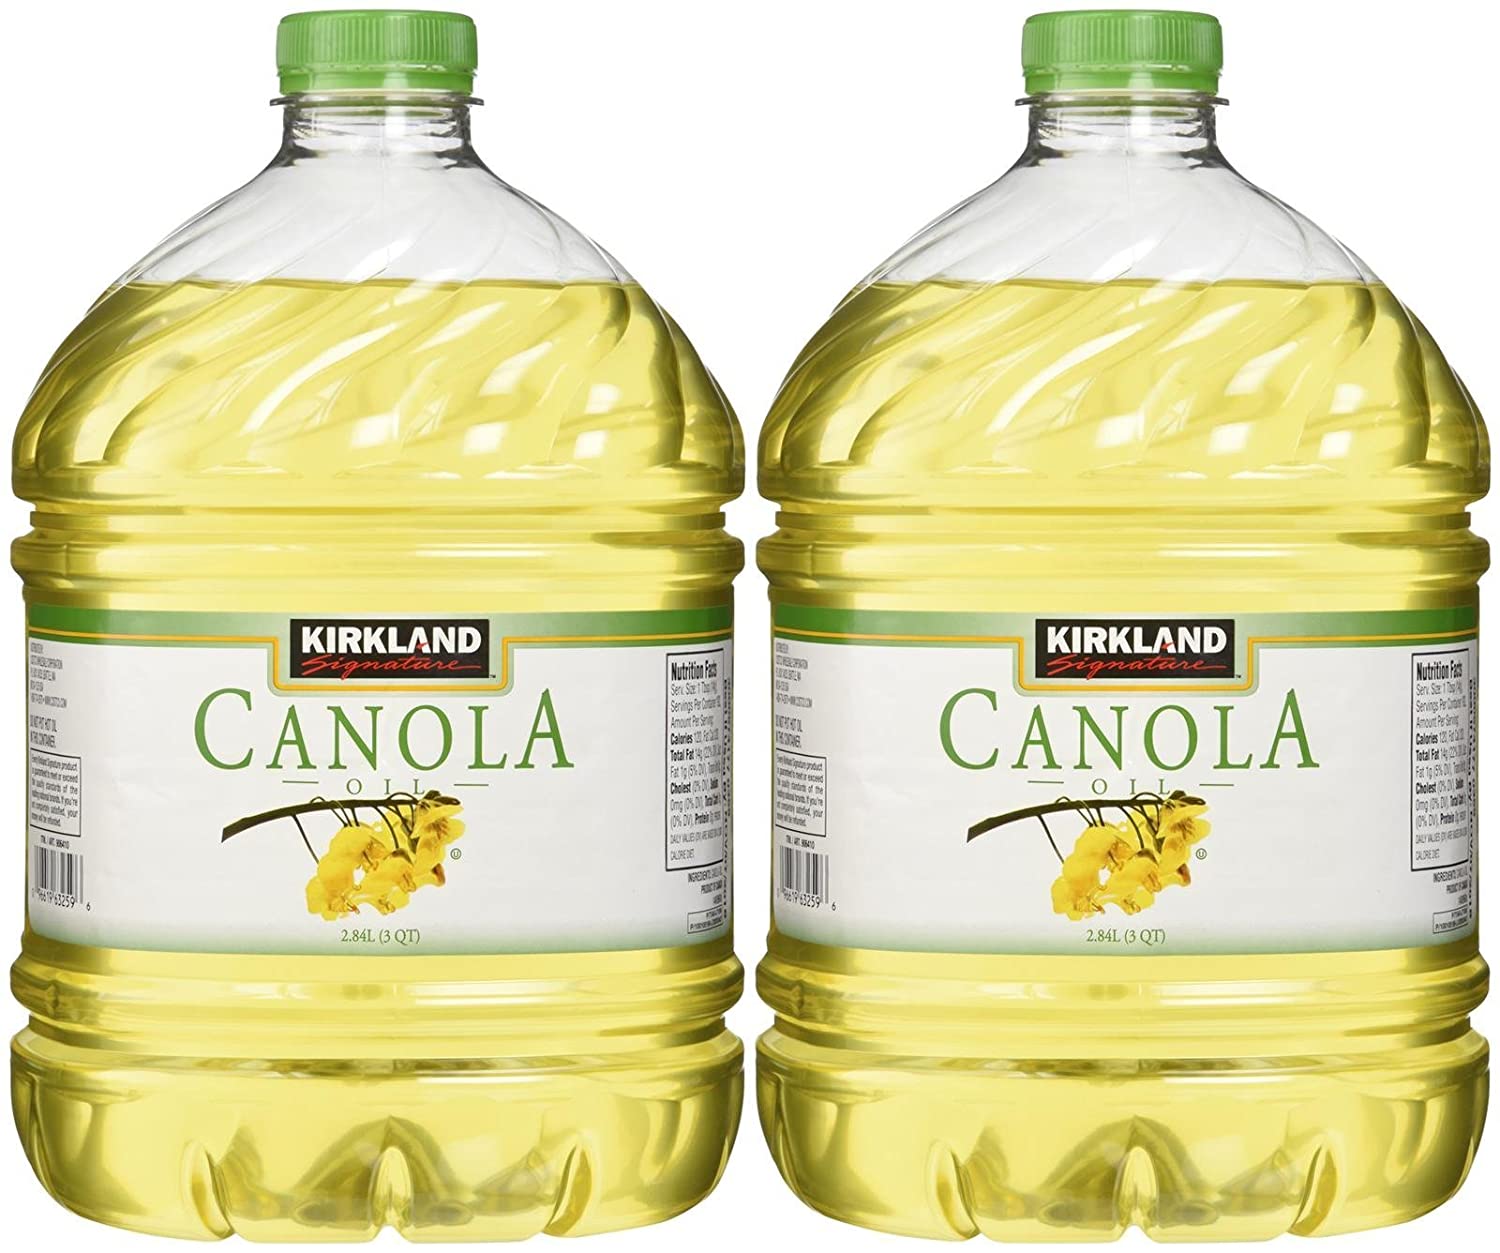 Canola oil